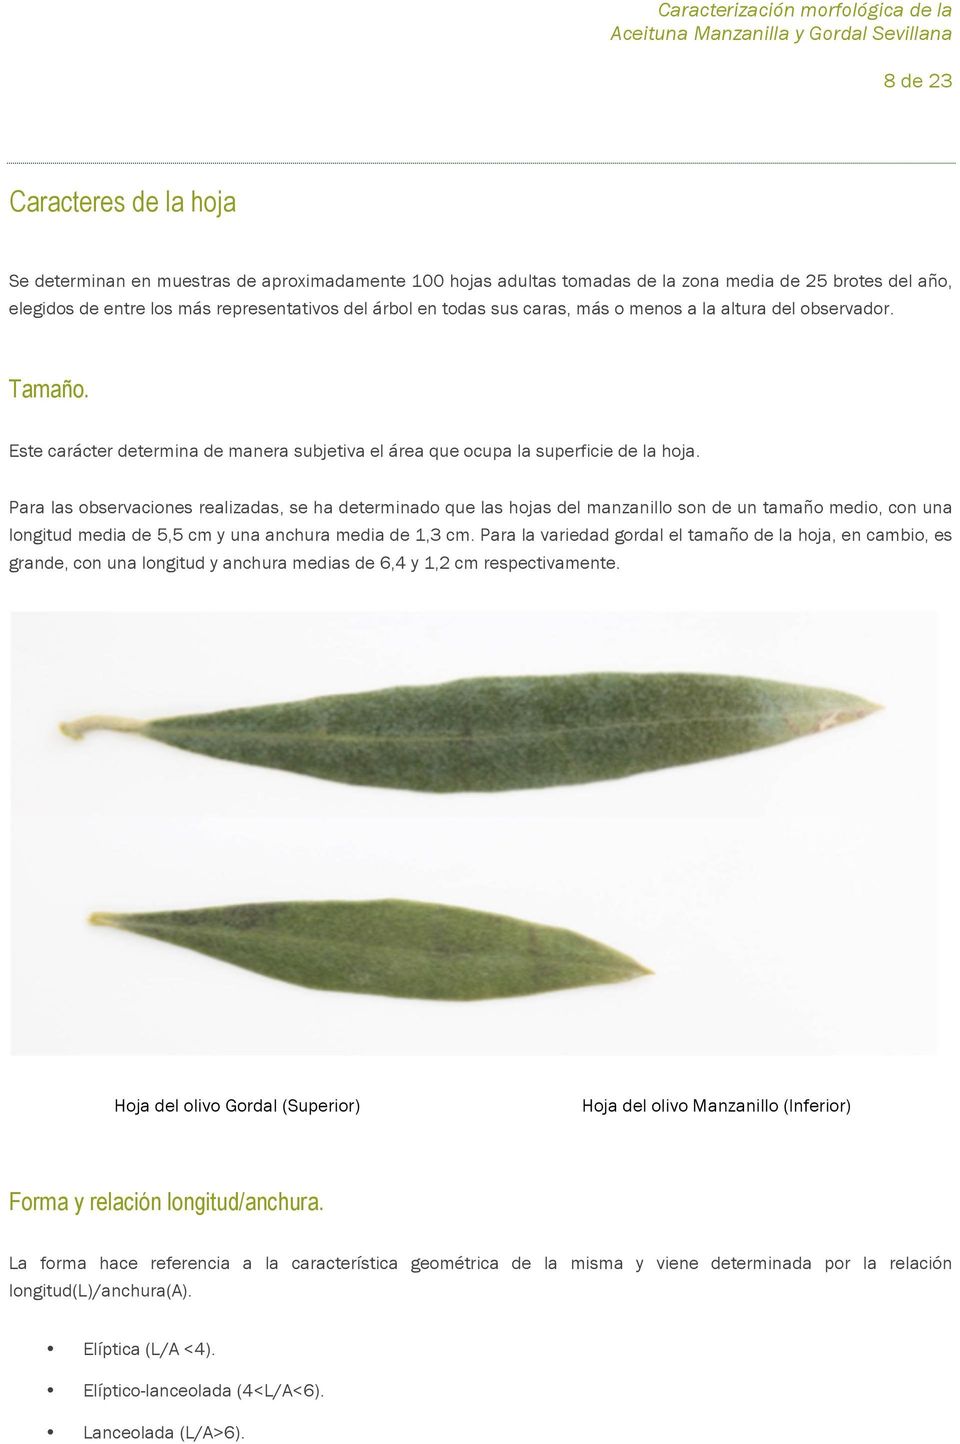 Para las observaciones realizadas, se ha determinado que las hojas del manzanillo son de un tamaño medio, con una longitud media de 5,5 cm y una anchura media de 1,3 cm.